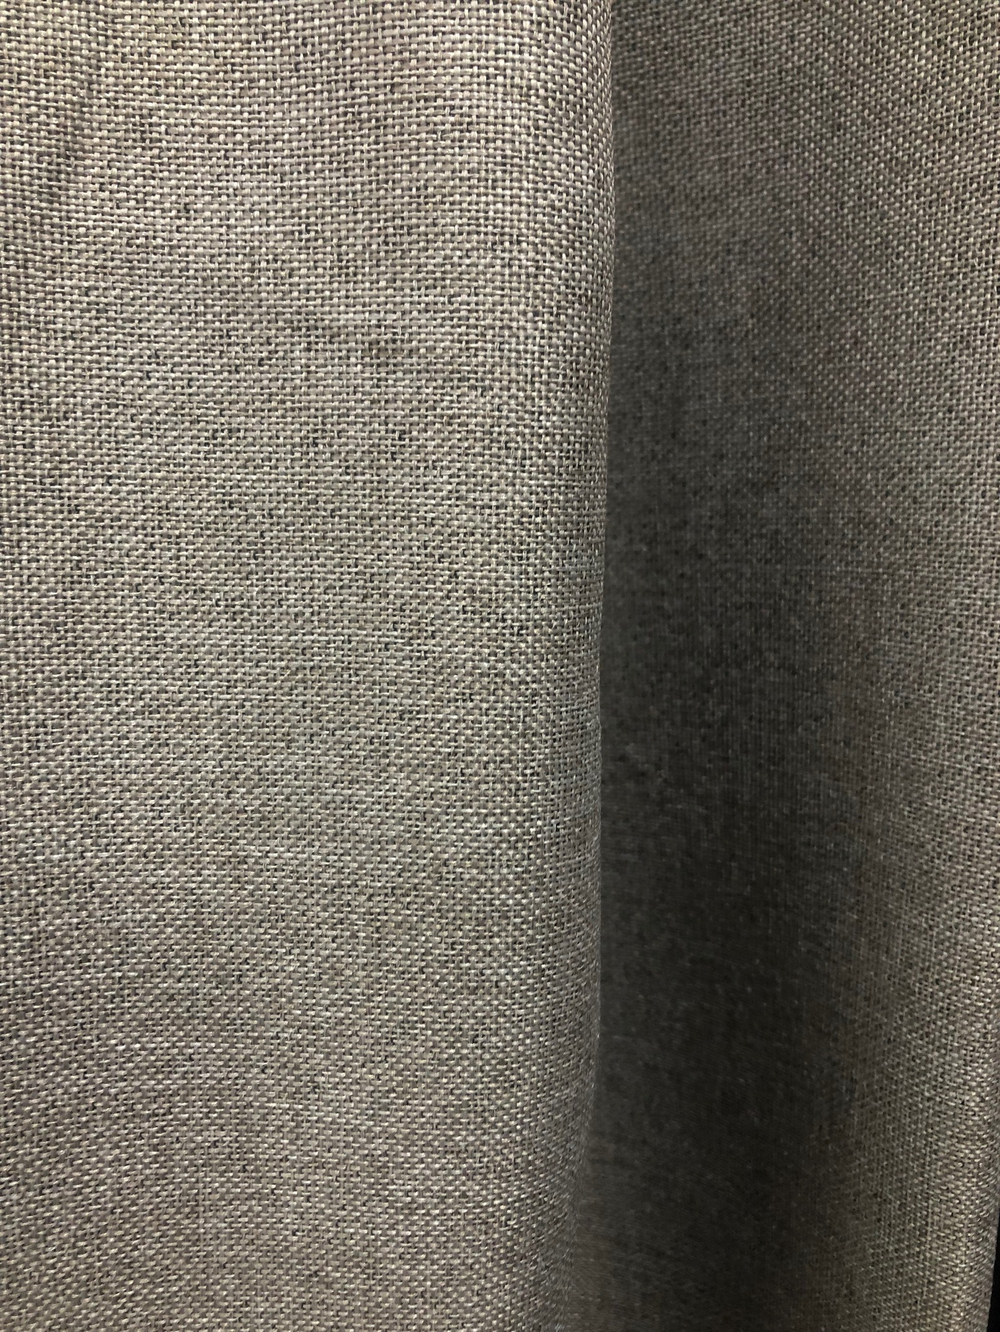 Ткань портьерная Блэкаут-лен, цвет натуральный лен, артикул 327618